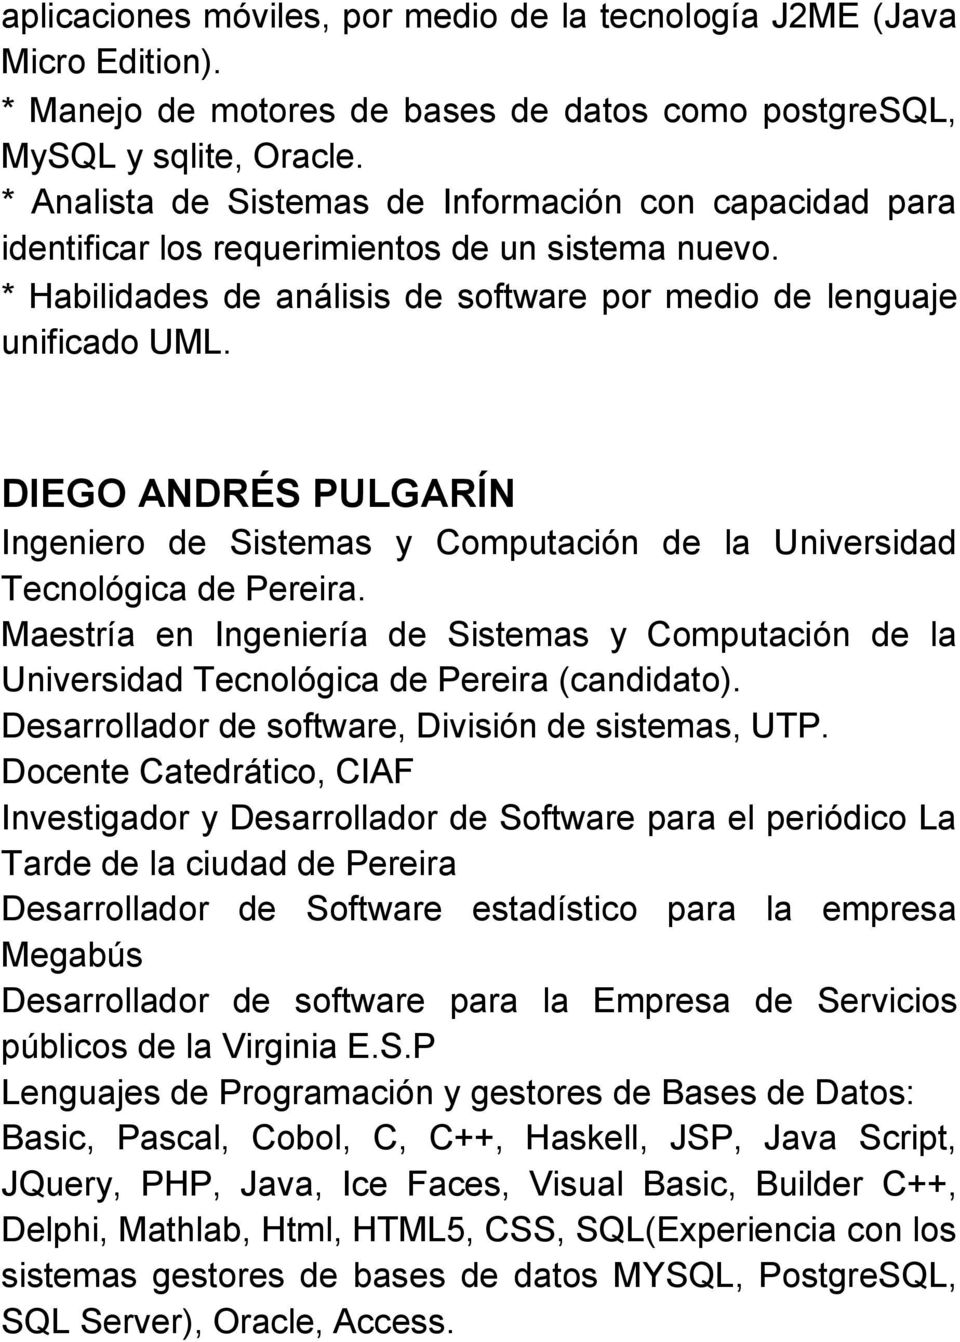 DIEGO ANDRÉS PULGARÍN Ingeniero de Sistemas y Computación de la Universidad Tecnológica de Pereira.